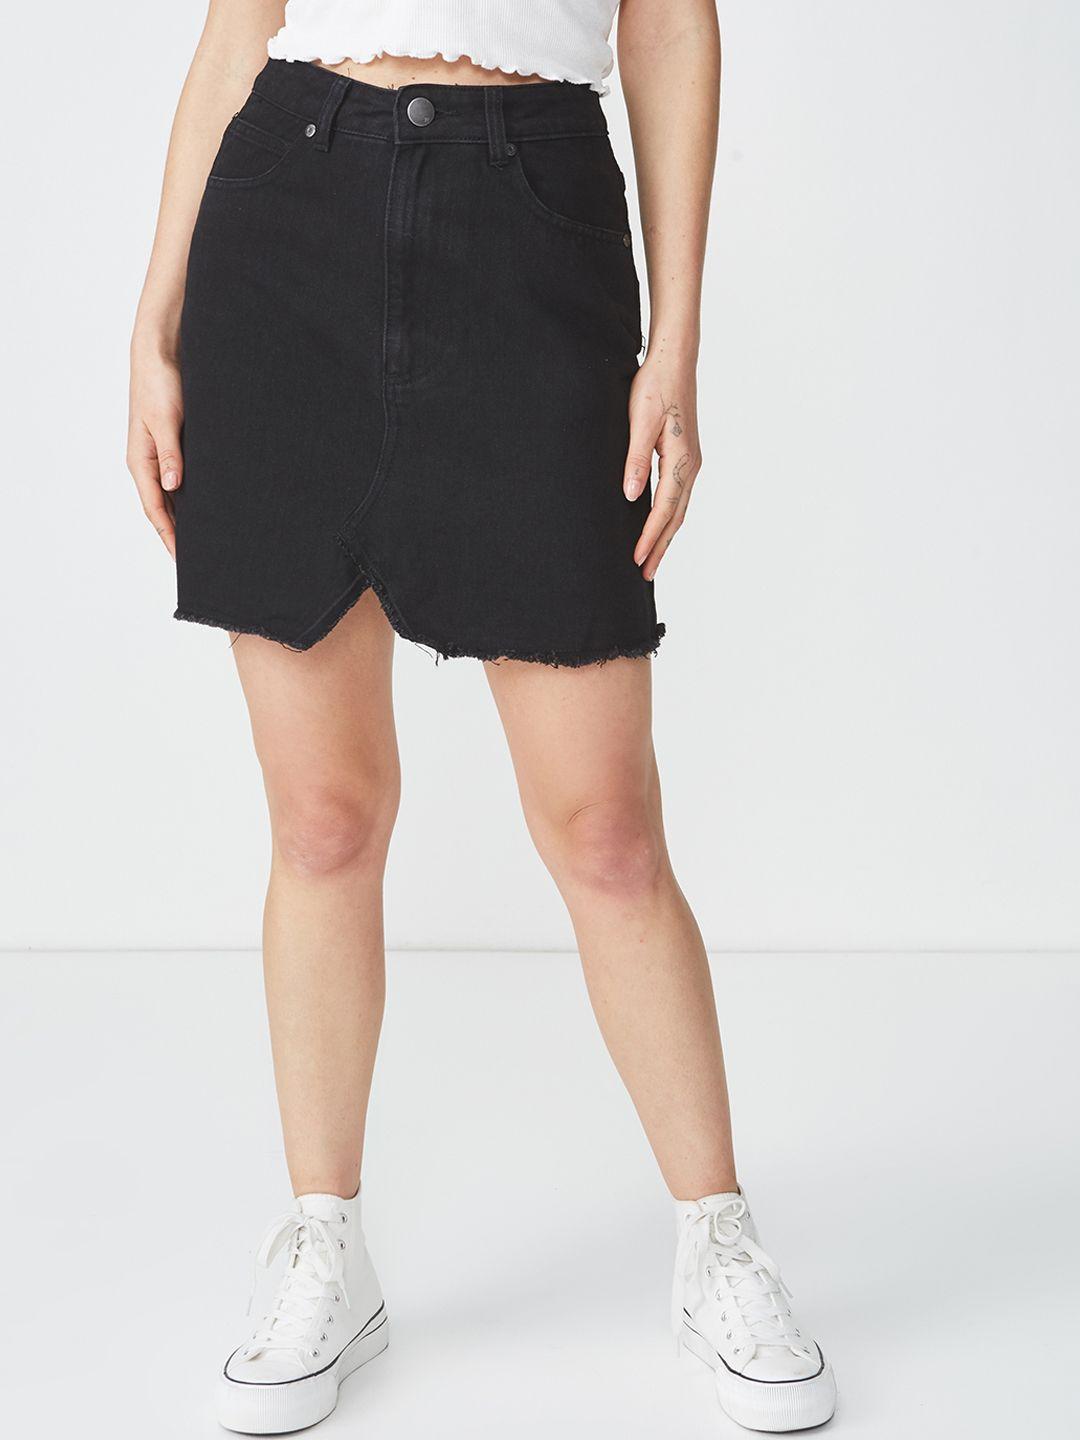 cotton on women black solid pure cotton denim pencil skirt